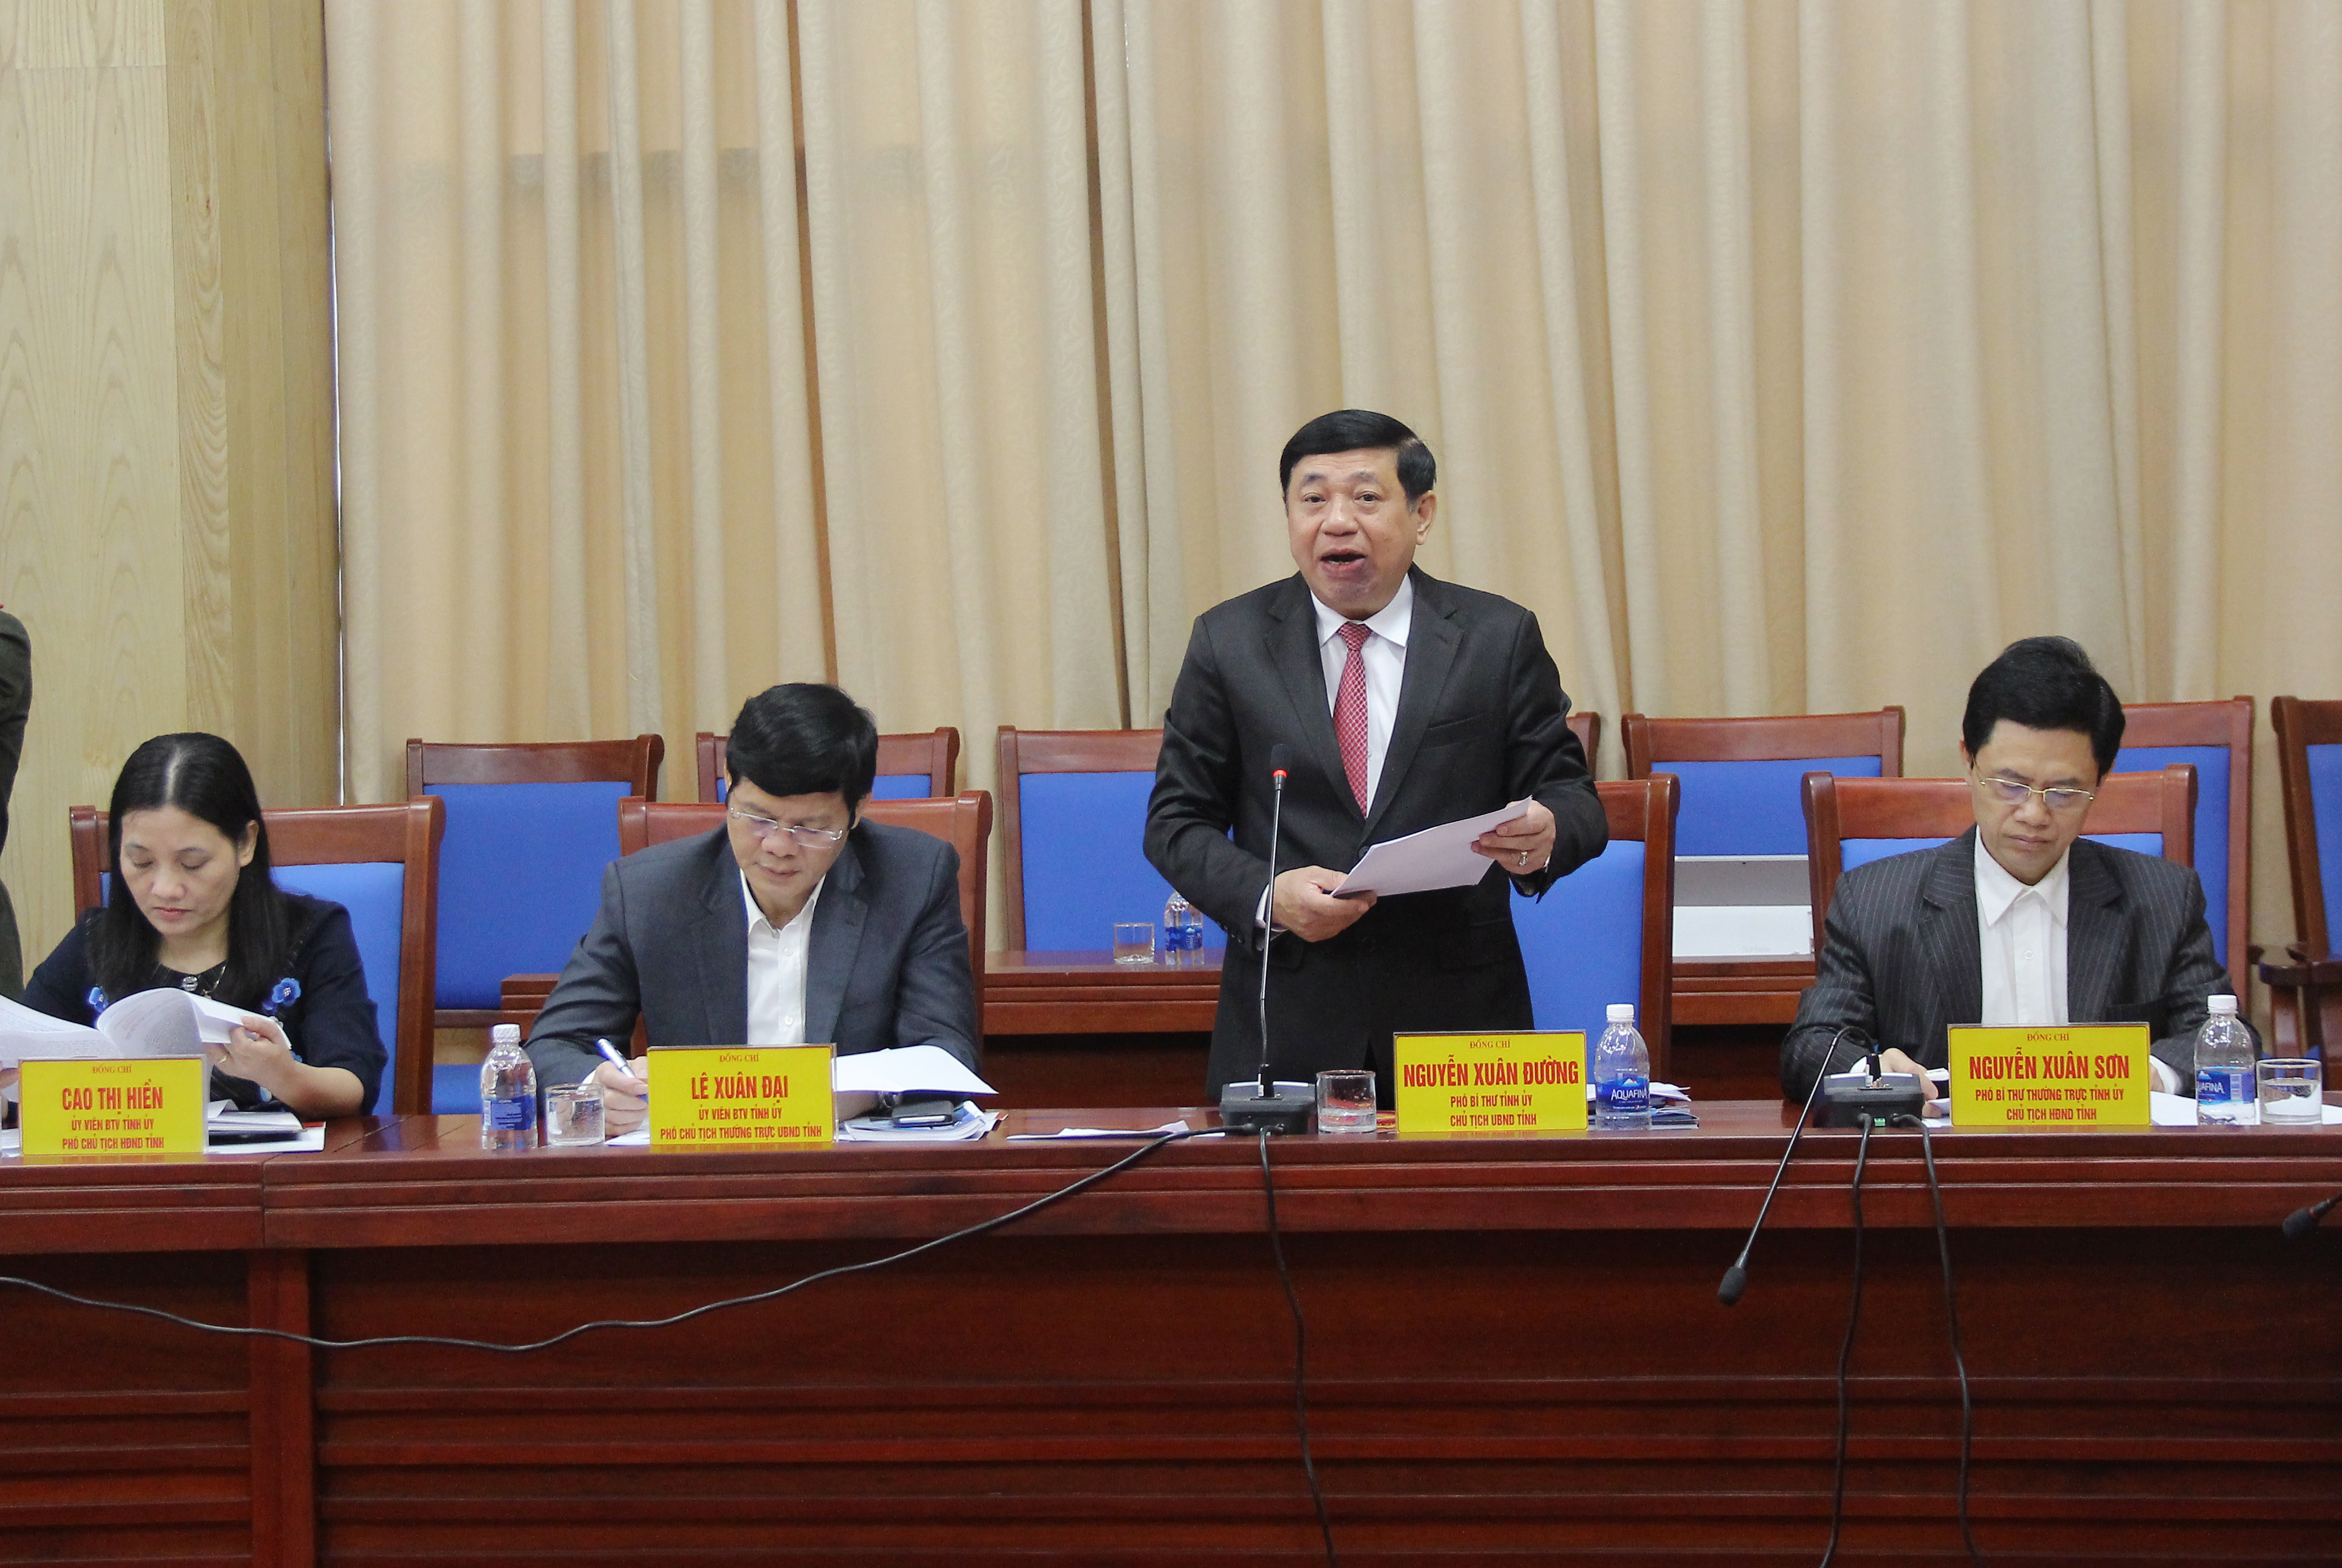 Đồng chí Nguyễn Xuân Đường - Phó Bí thư Tỉnh ủy, Chủ tịch UBND tỉnh